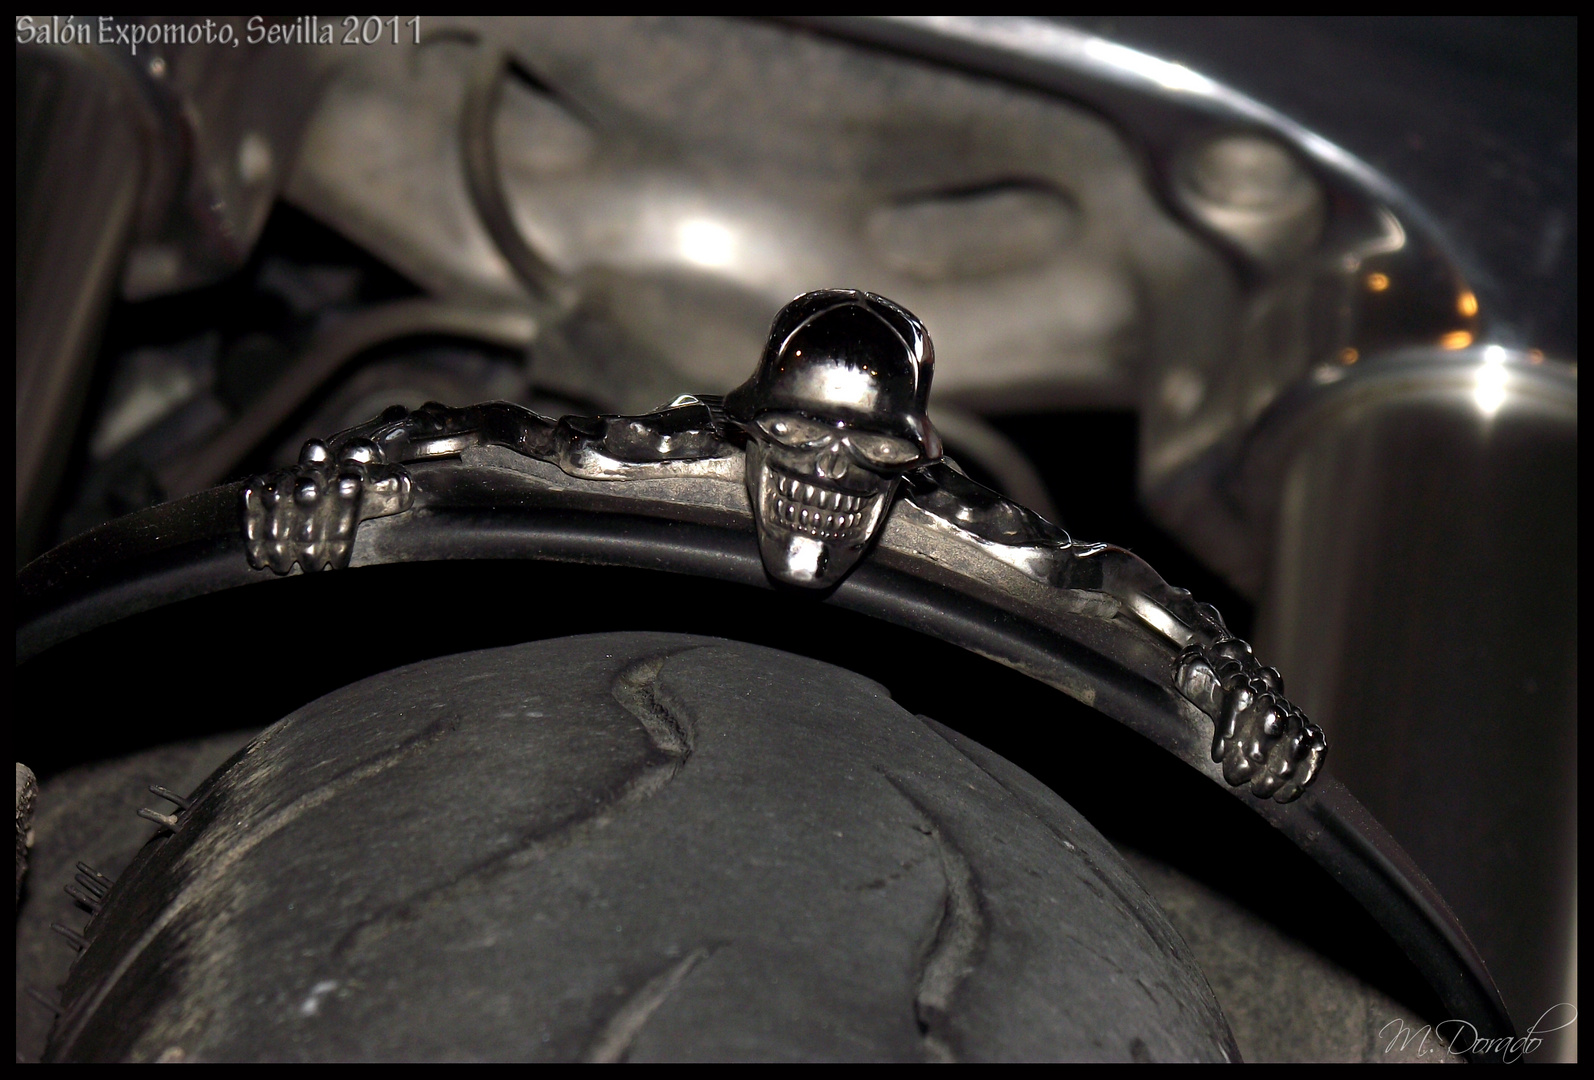 Detail of Harley Davidson